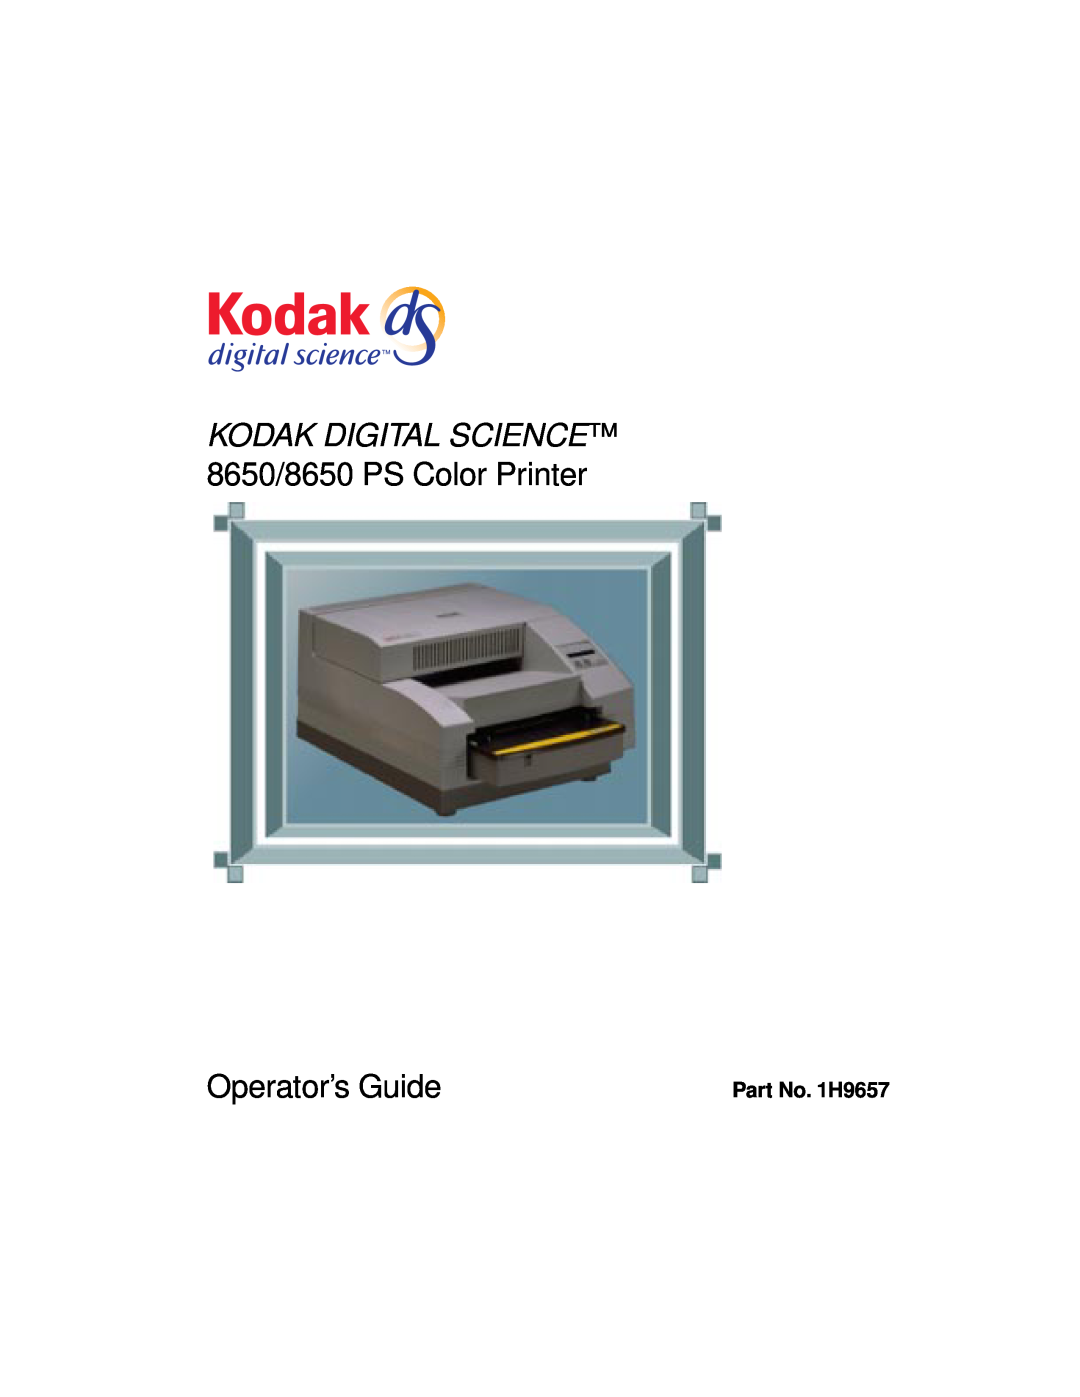 Kodak manual Part No. 1H9657, Kodak Digital Science, 8650/8650 PS Color Printer, Operator’s Guide 